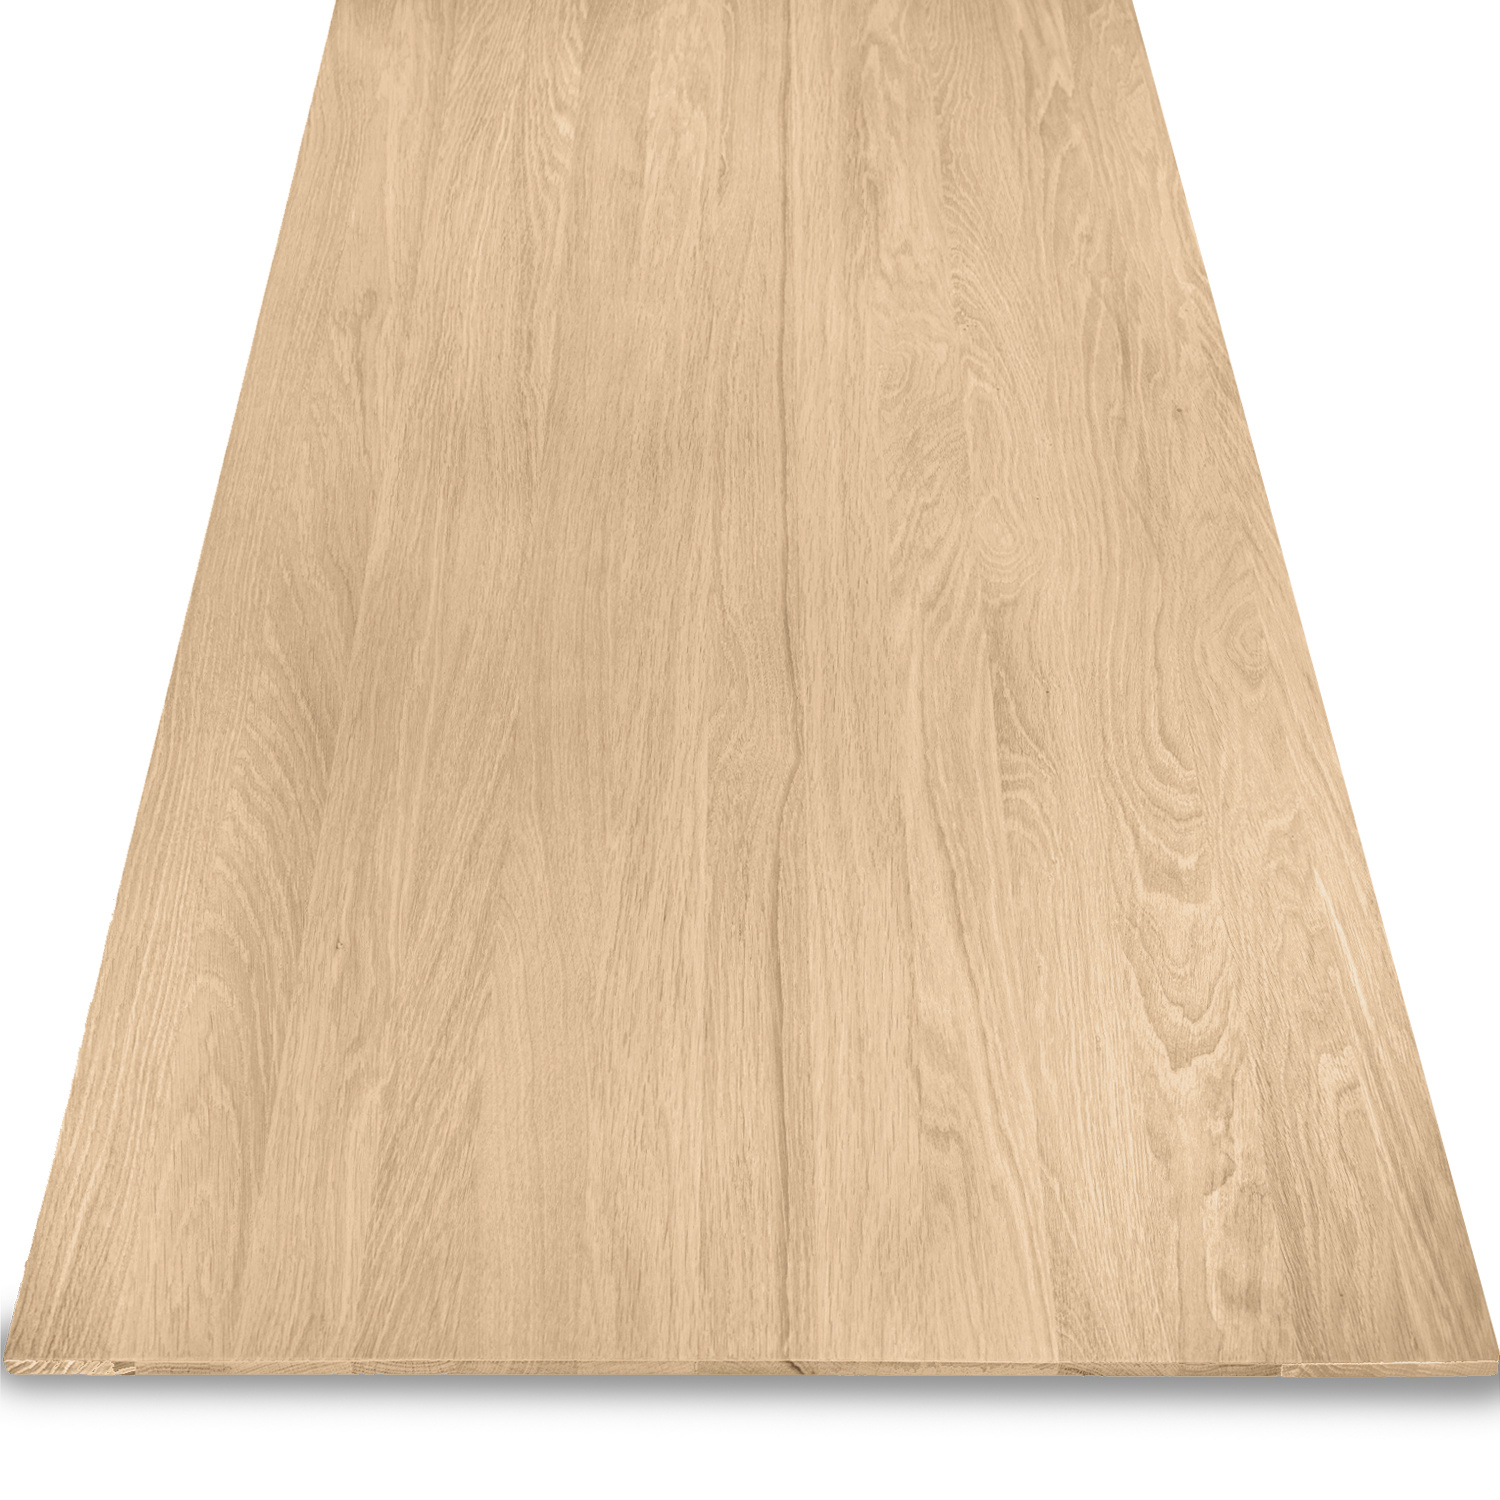  Tischplatte Eiche - Schweizer Kante - nach Maß - 4 cm dick (2-lagig) - Eichenholz A-Qualität - Eiche Tischplatte massiv - verleimt & künstlich getrocknet (HF 8-12%) - 50-120x50-350 cm